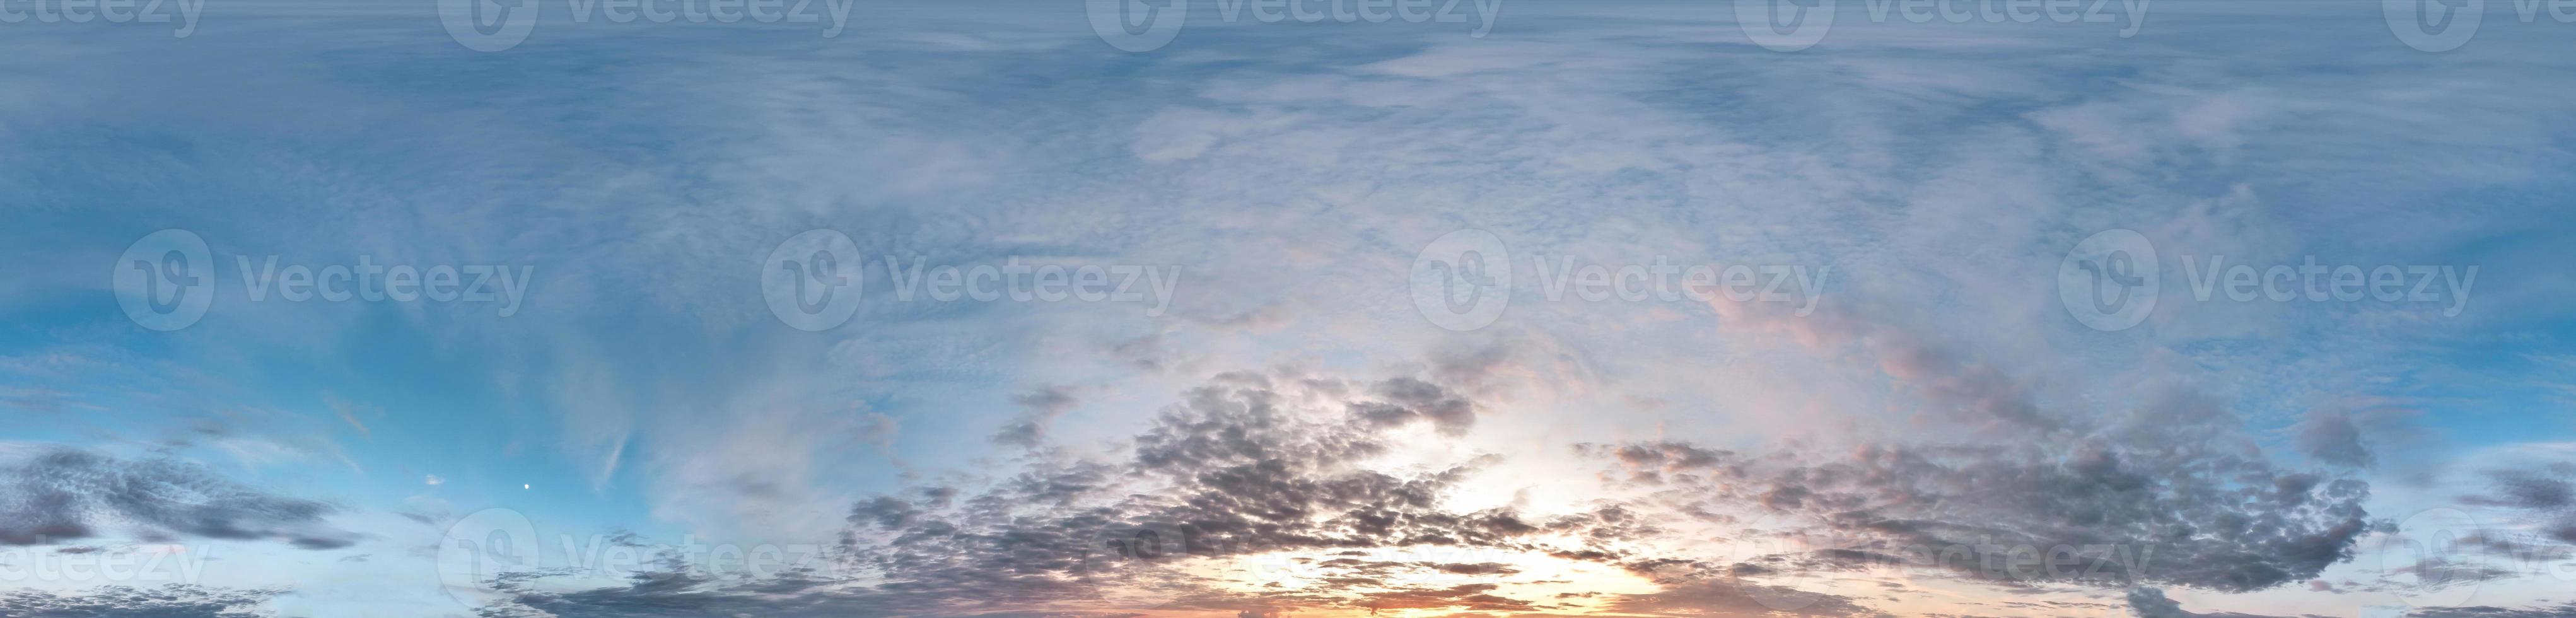 Nahtloser bewölkter blauer Himmel Hdri-Panorama 360-Grad-Winkelansicht mit Zenit und schönen Wolken zur Verwendung in 3D-Grafiken als Himmelskuppel foto